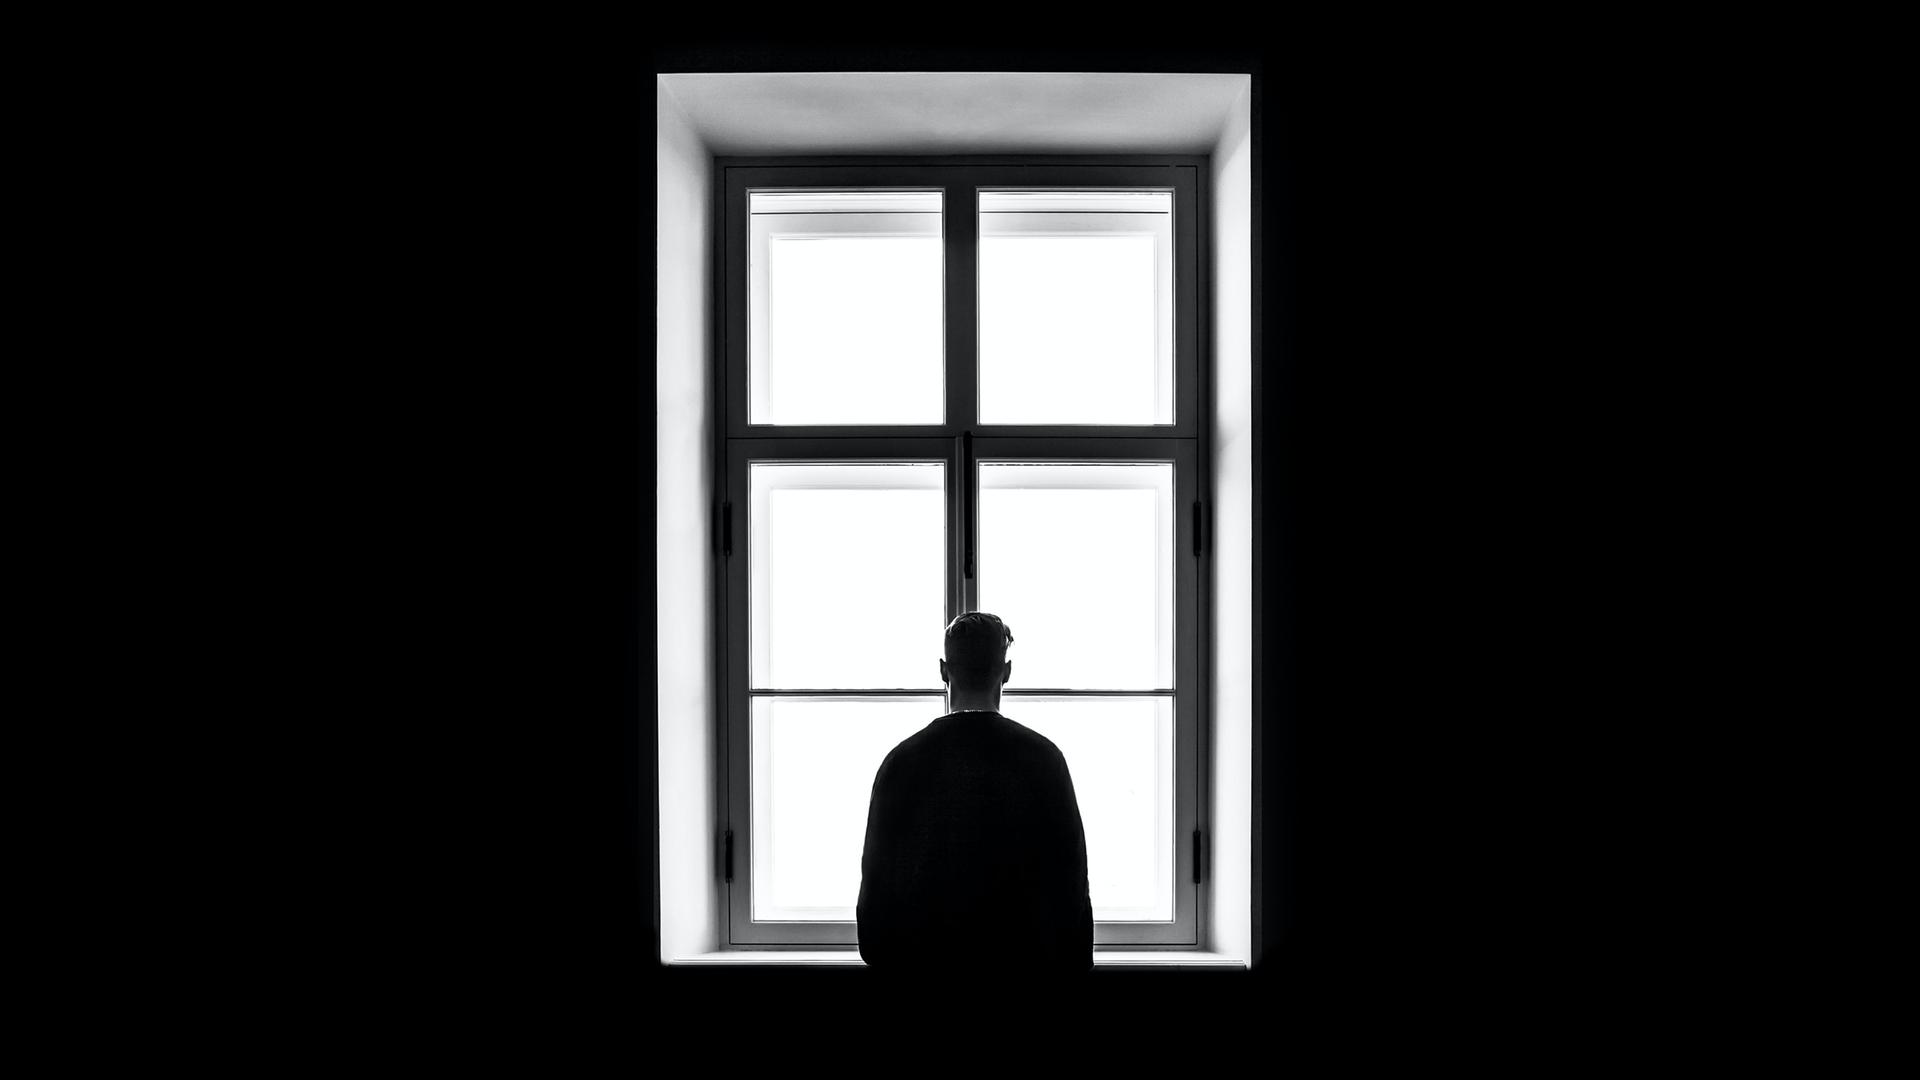 Eine Person steht mit dem Rücken zur Kamera vor einem gleissend hellen Fenster auf diesem schwarz-weiss Bild.